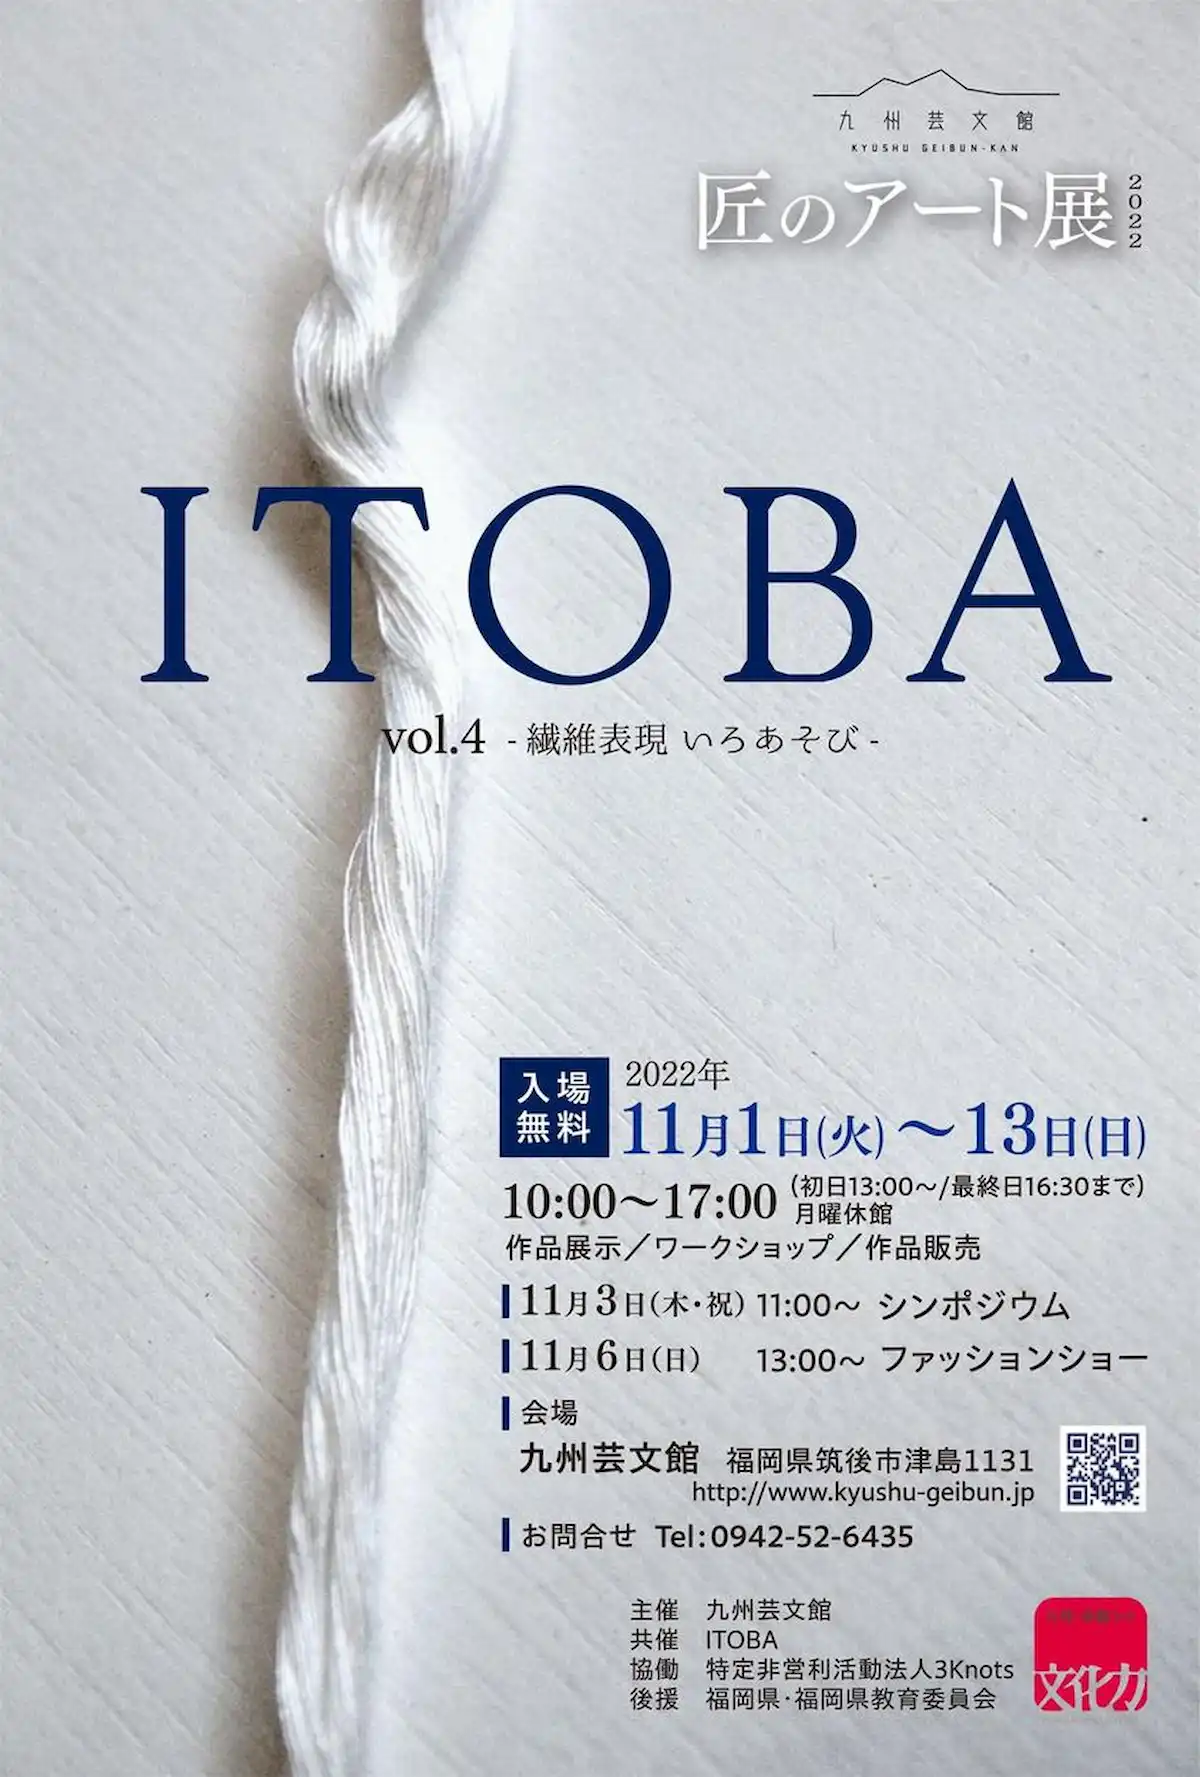 匠のアート展2022 ITOBA vol.4-繊維表現いろあそび-